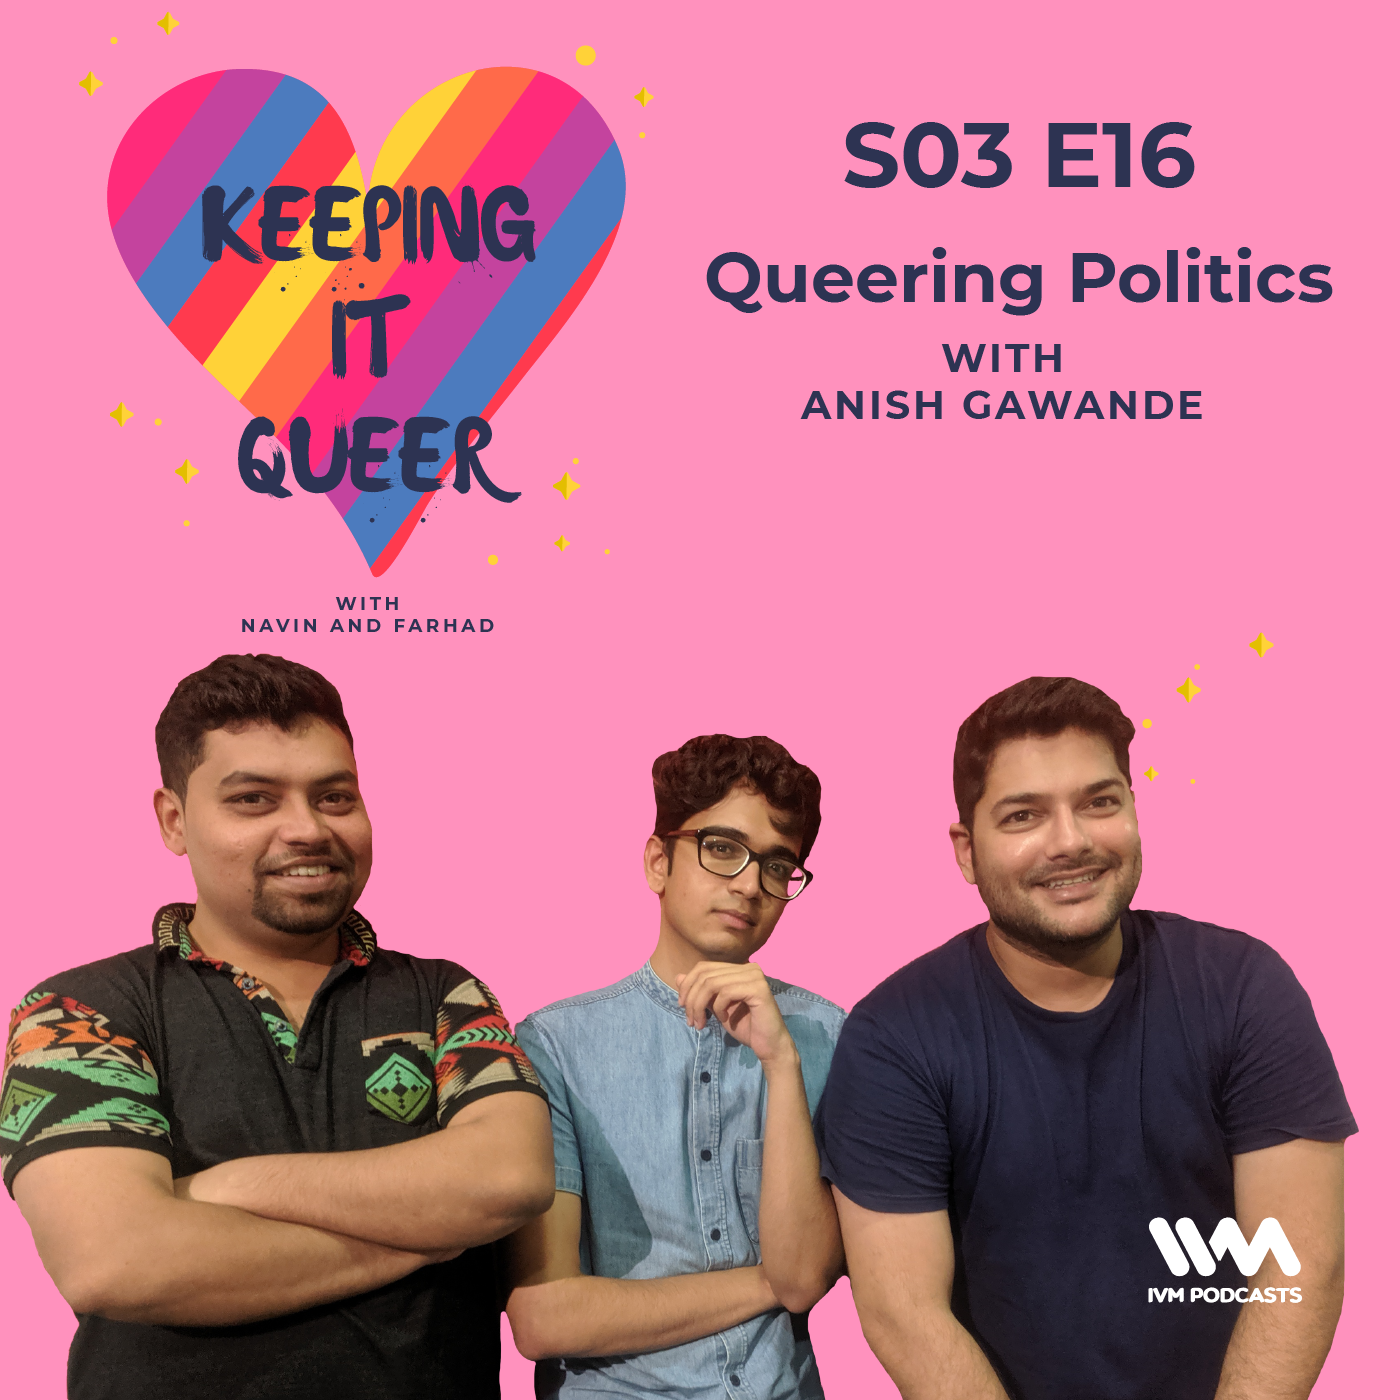 S03 E16: Queering Politics